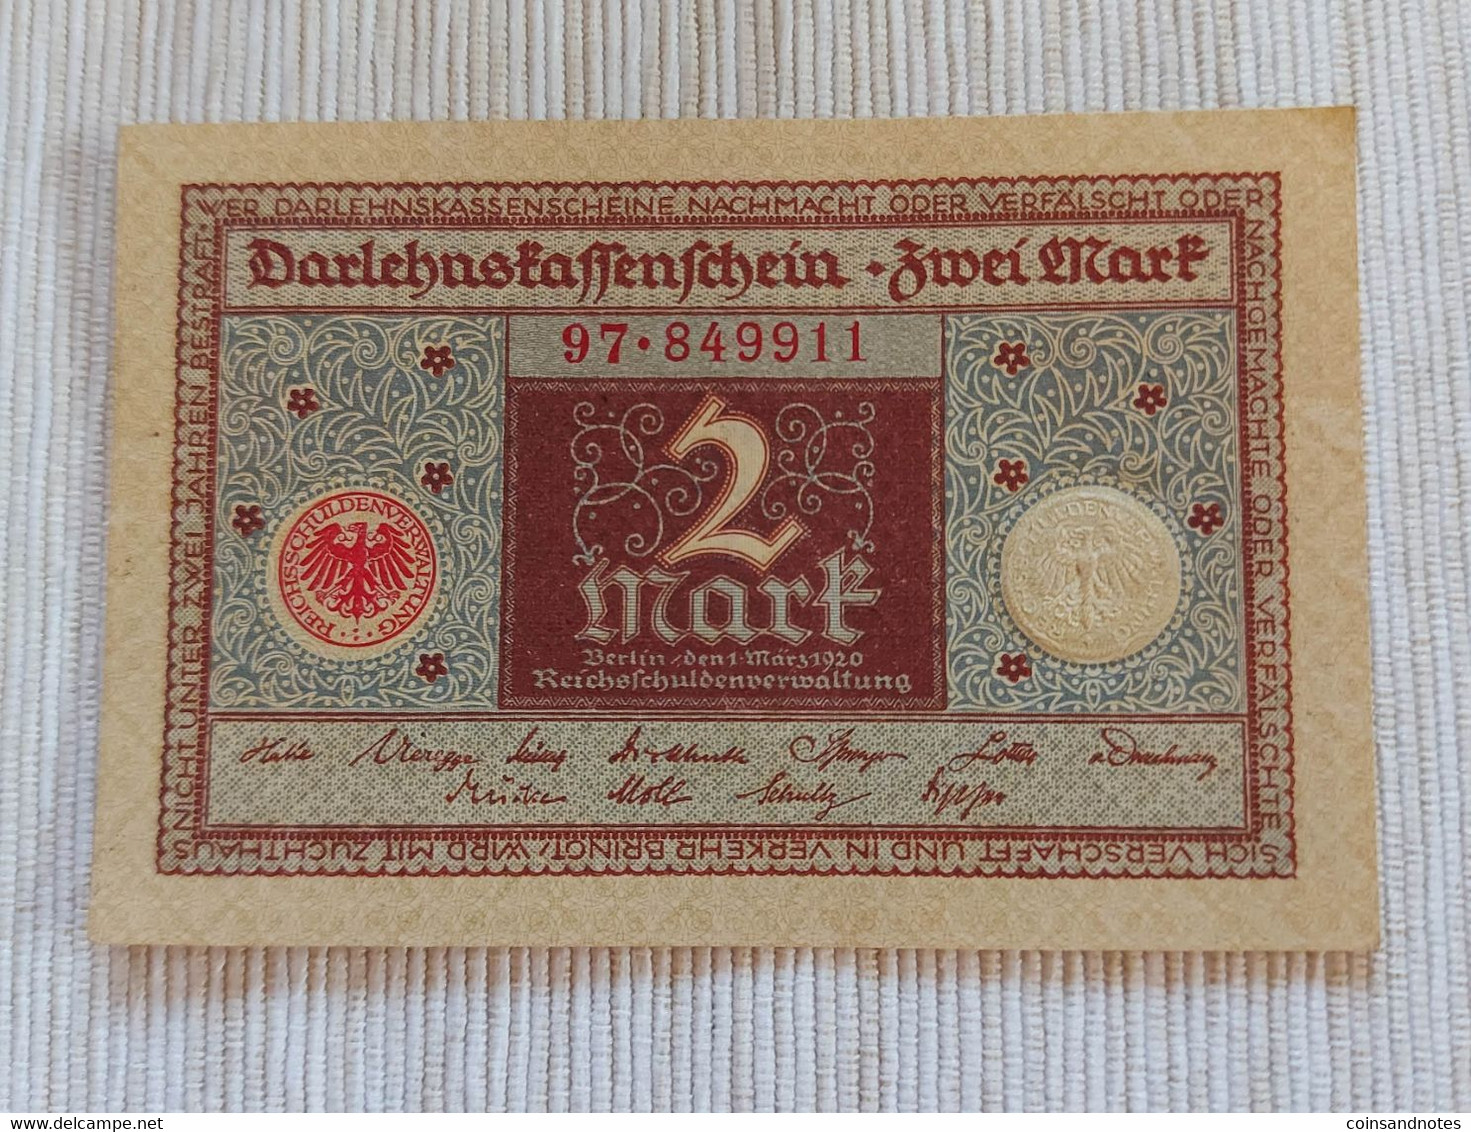 Germany 1920 - 2 Mark - Darlehenskassenschein - Rosenberg 65a - No 97.849911 UNC - 2 Mark